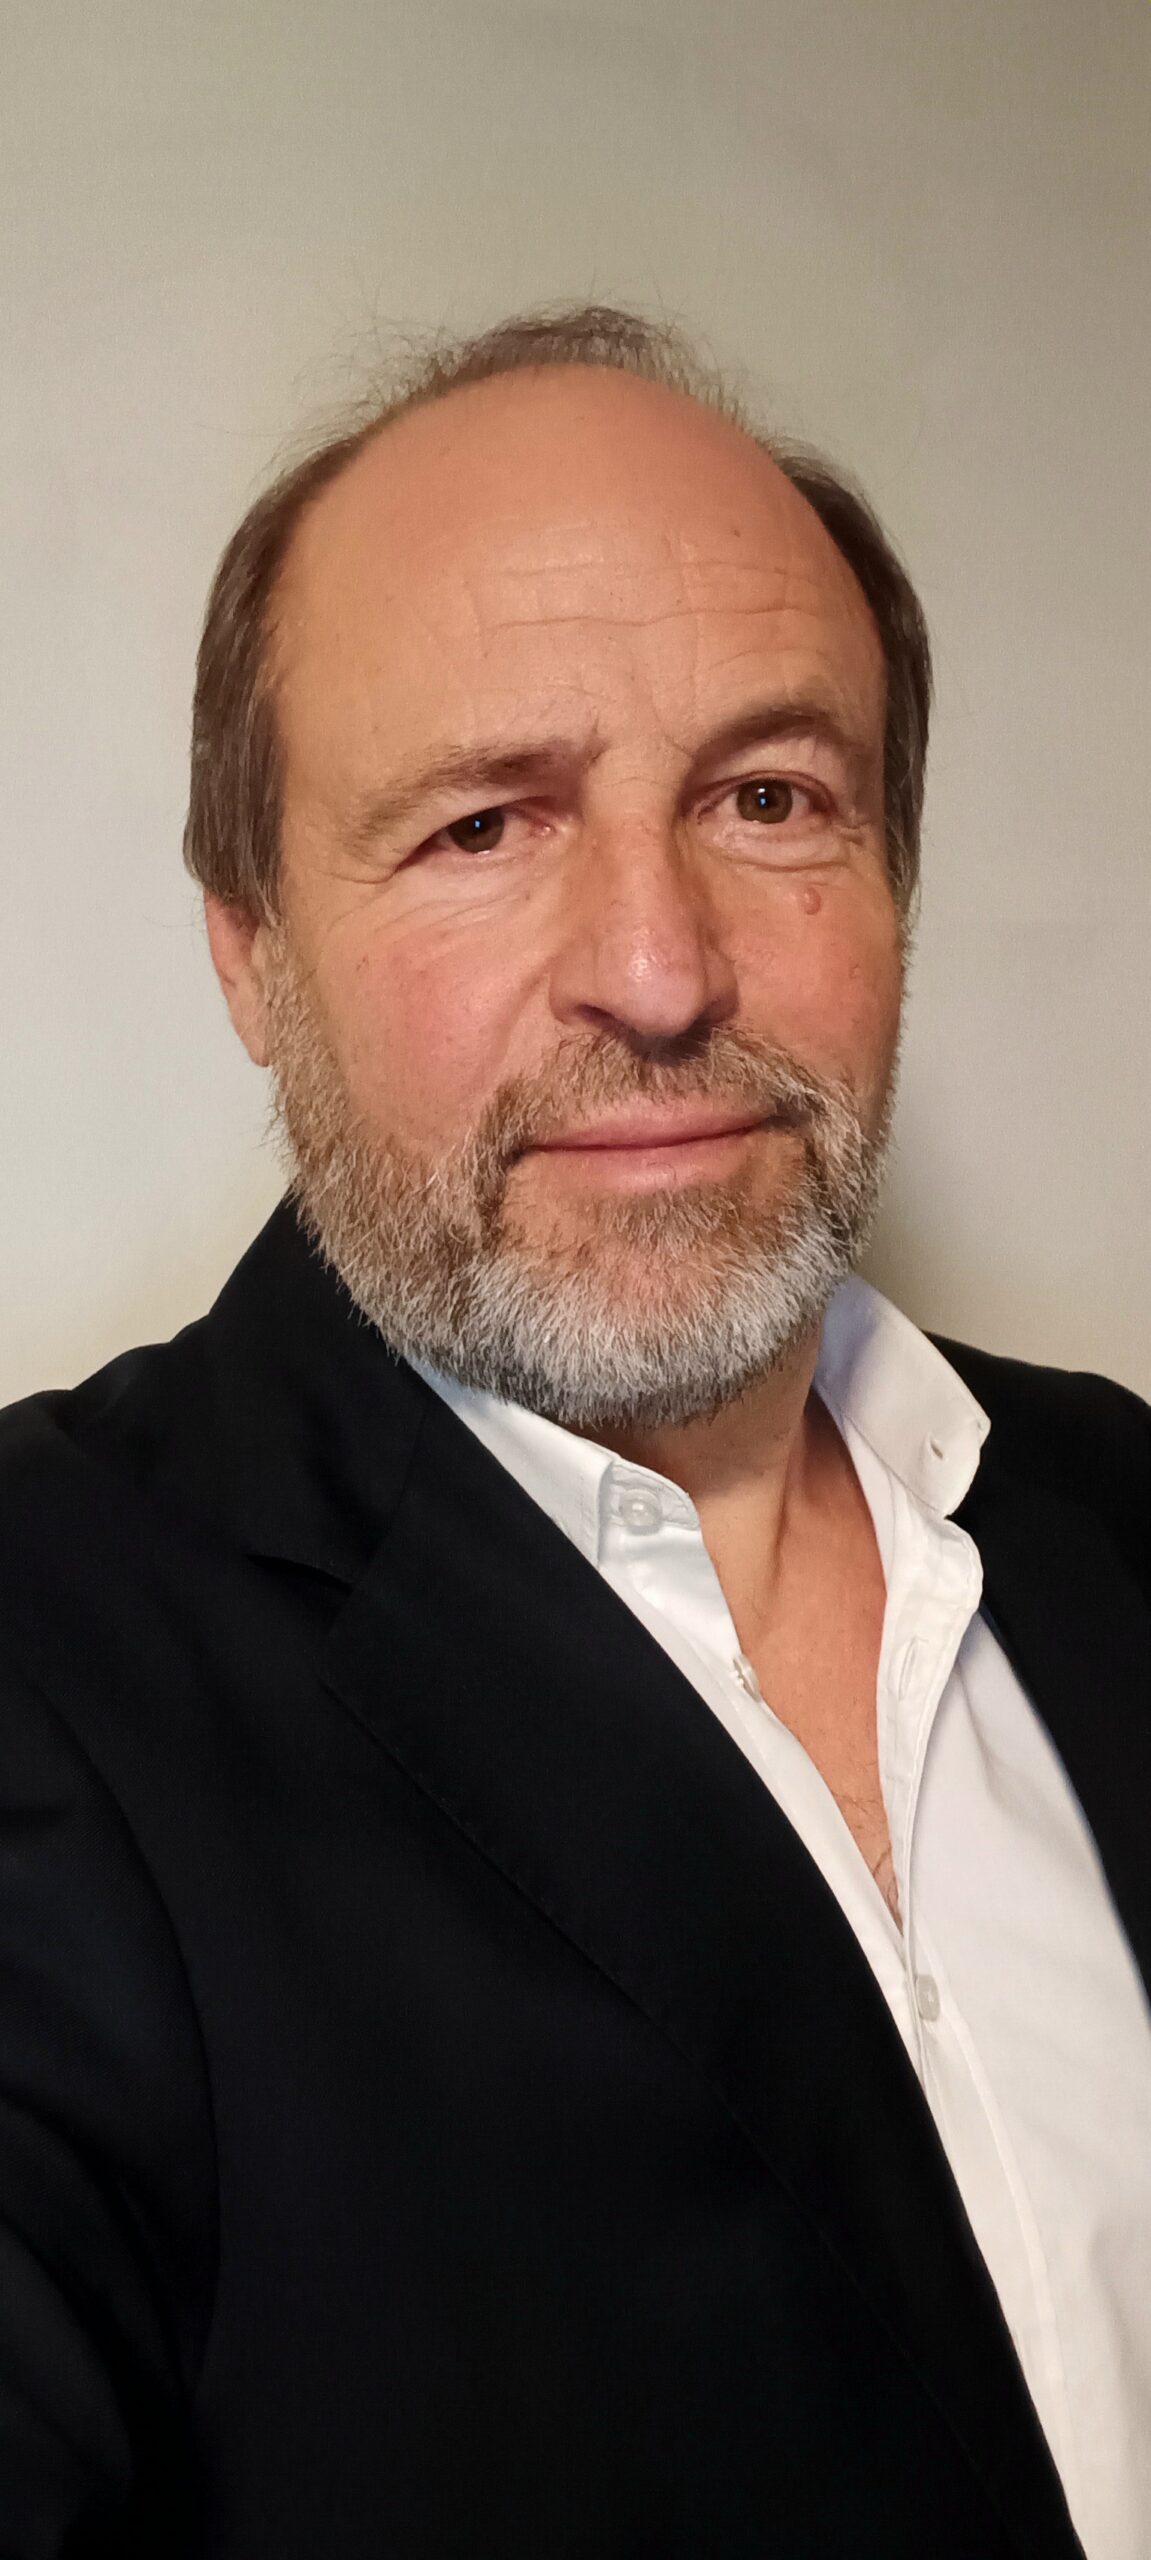 Dieter Schüll, Experte für nationales und internationales Zwangsvollstreckungs- und Zwangsversteigerungsrecht